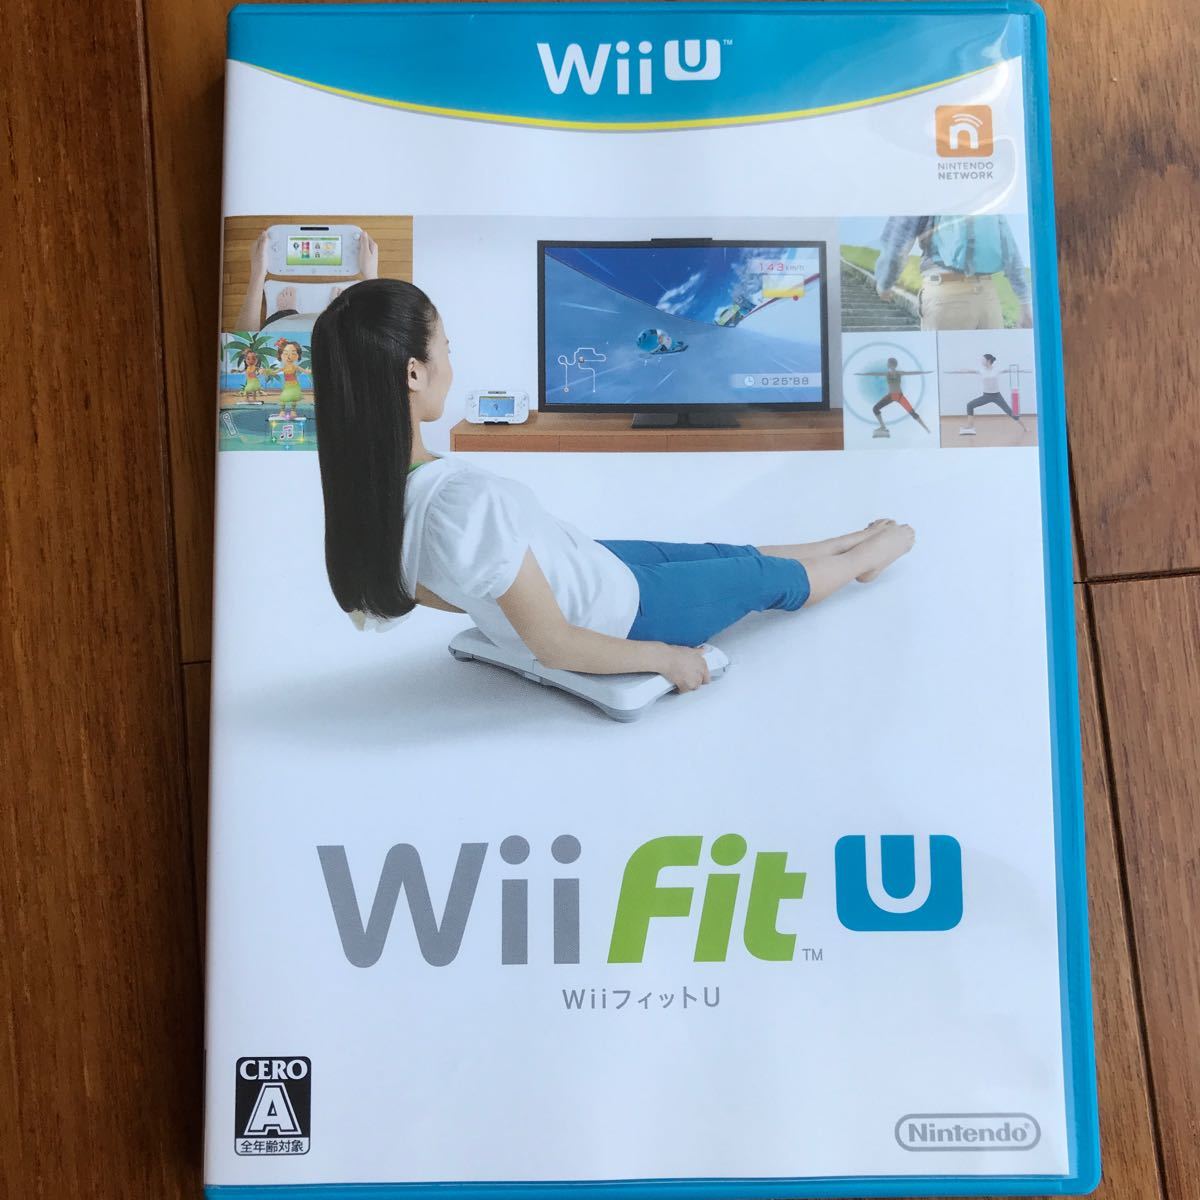 WiiU Wii Fit U